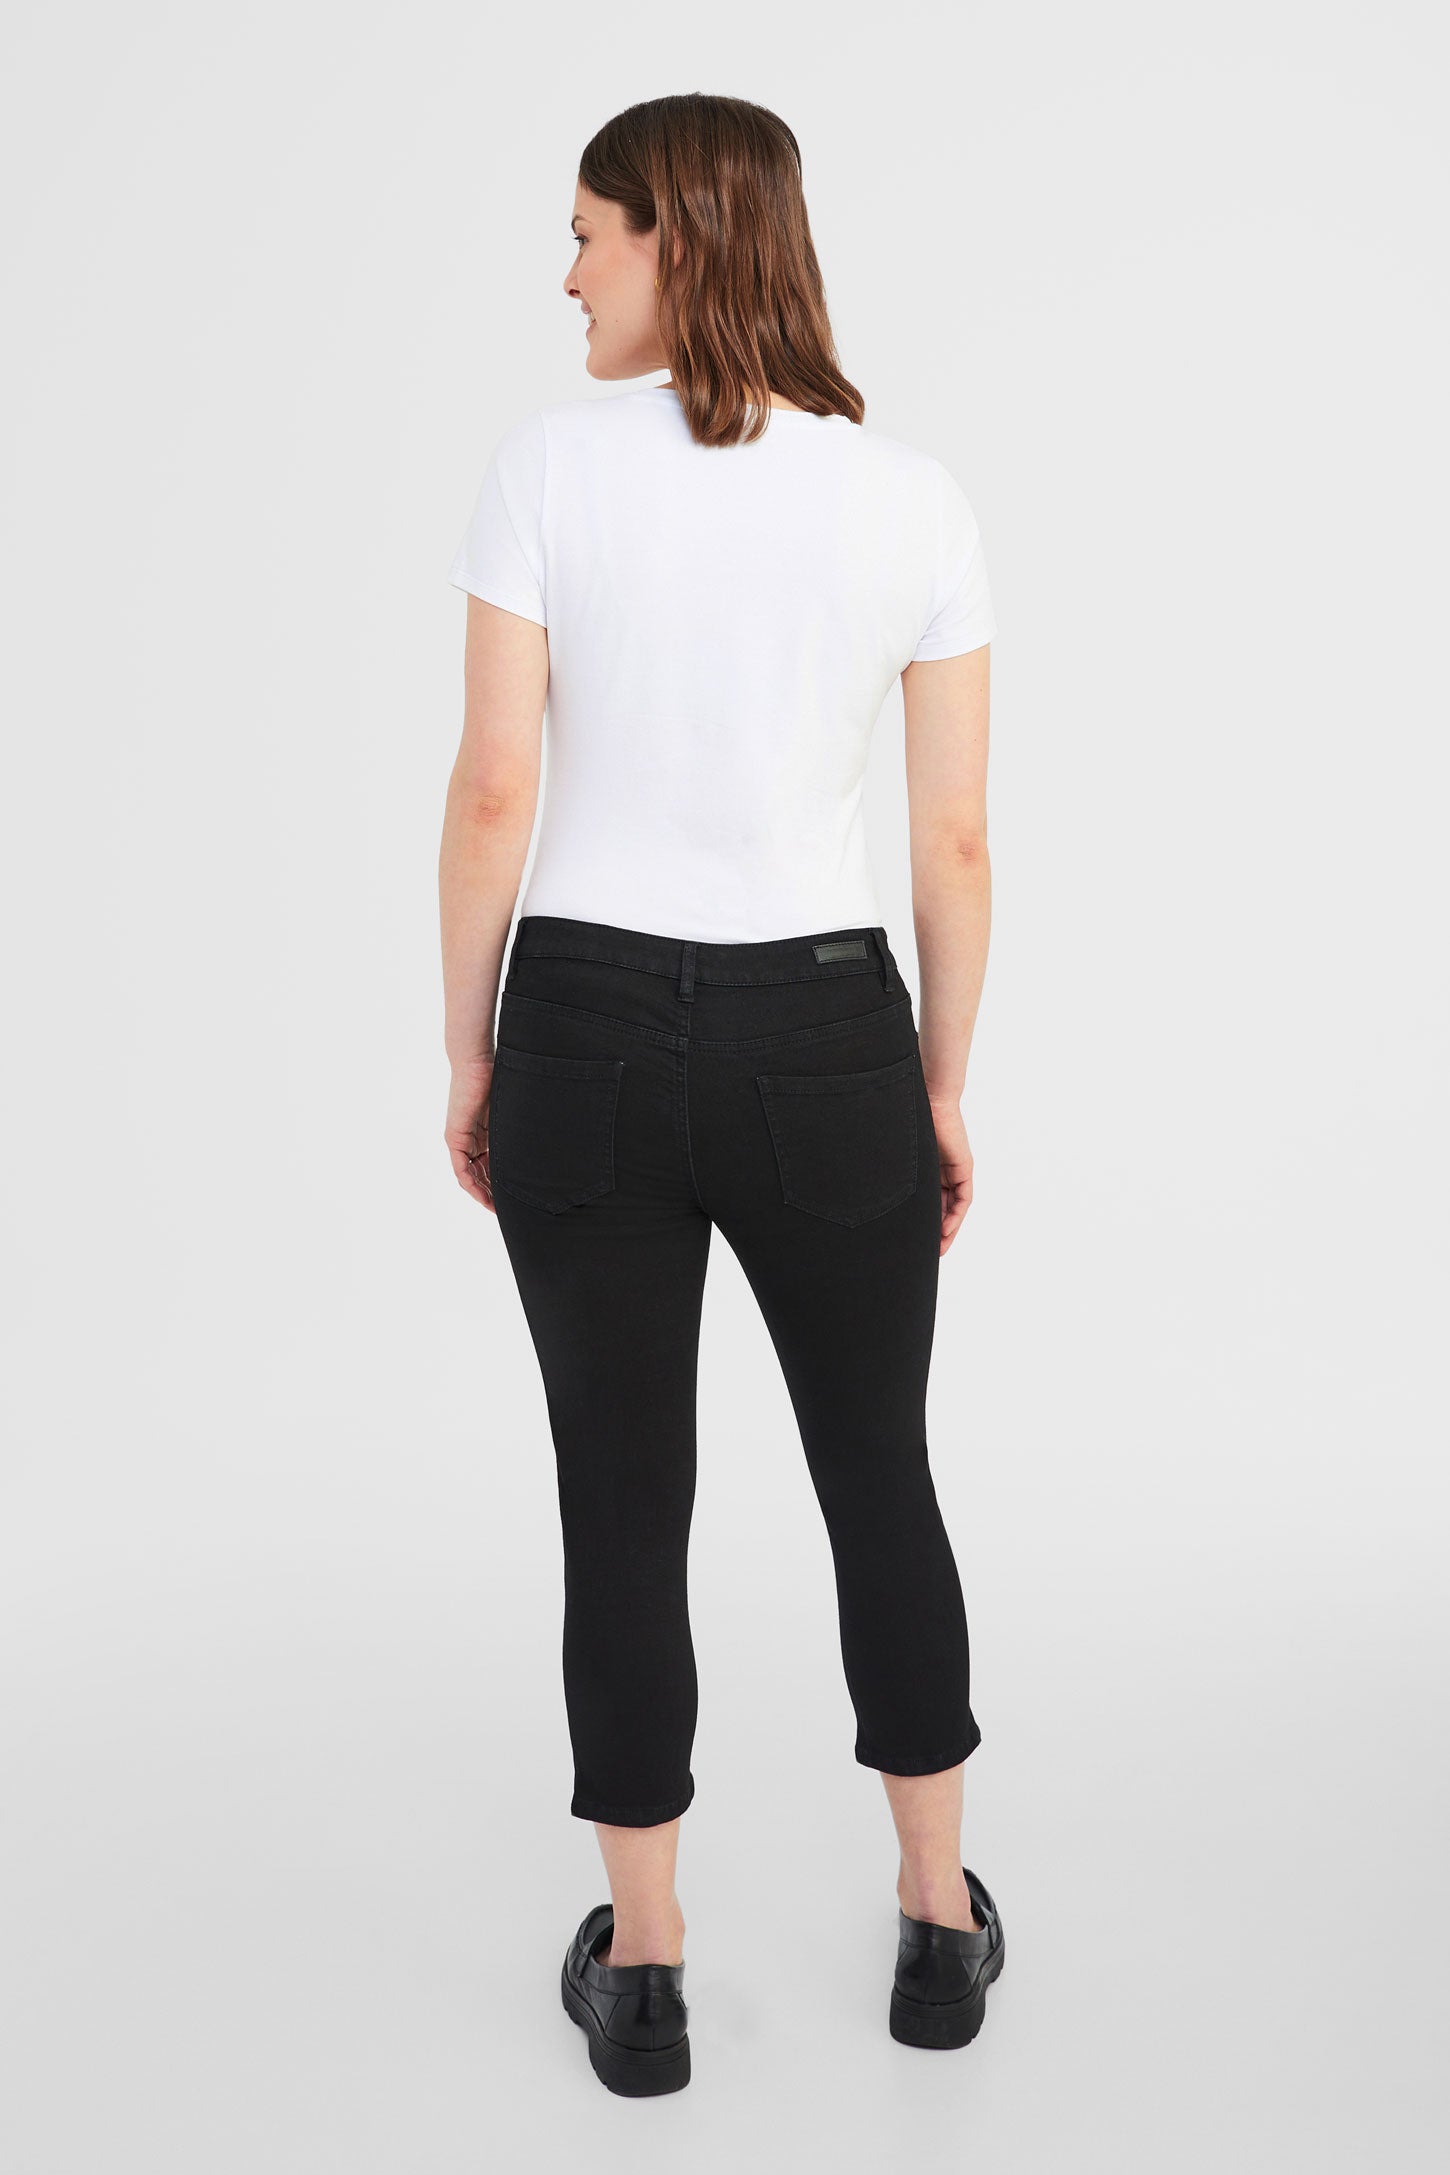 Capri 5 poches en jeans - Femme && NOIR